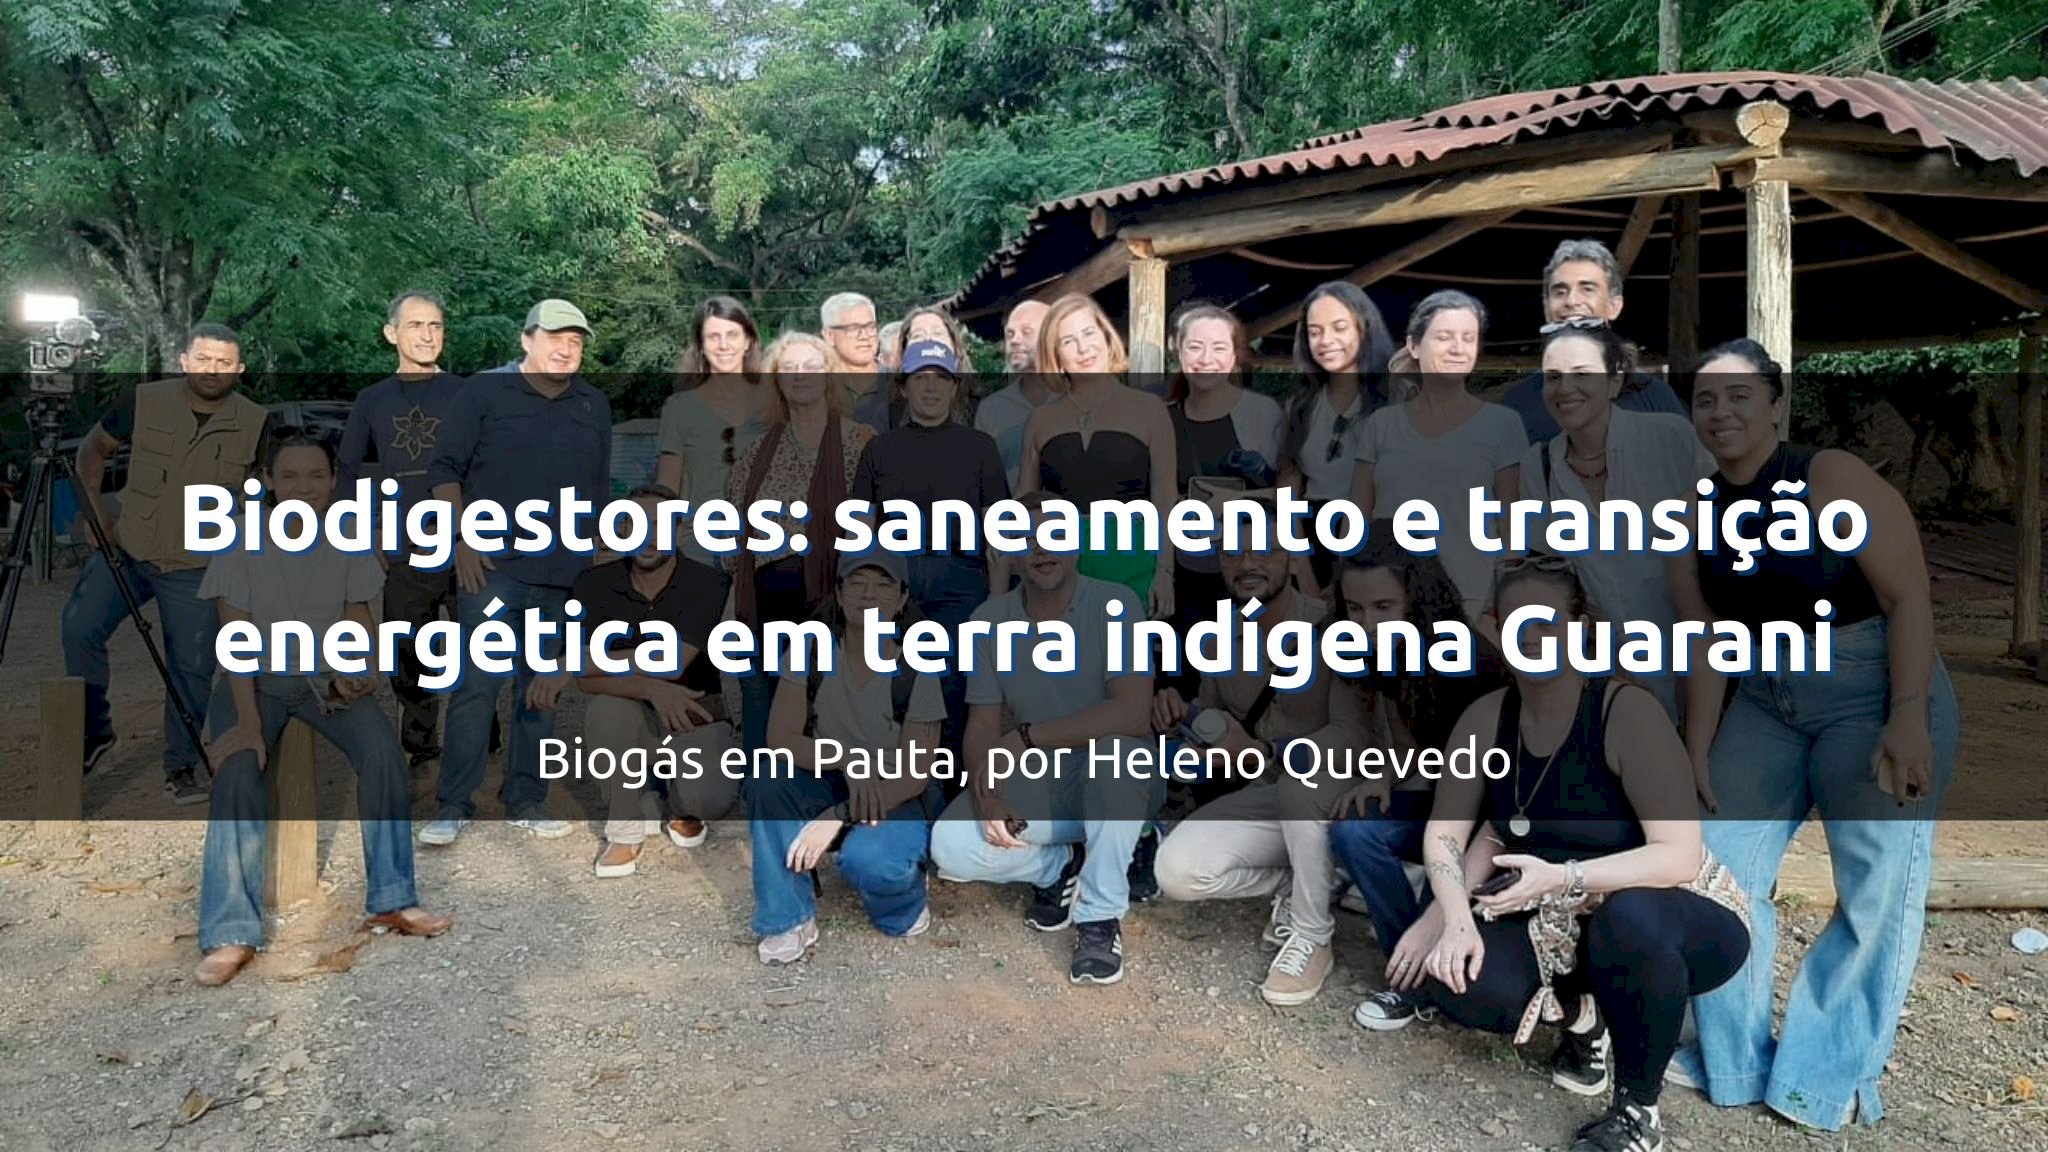 Press Trip: Biodigestores proporcionam saneamento e transição energética em terra indígena Guarani